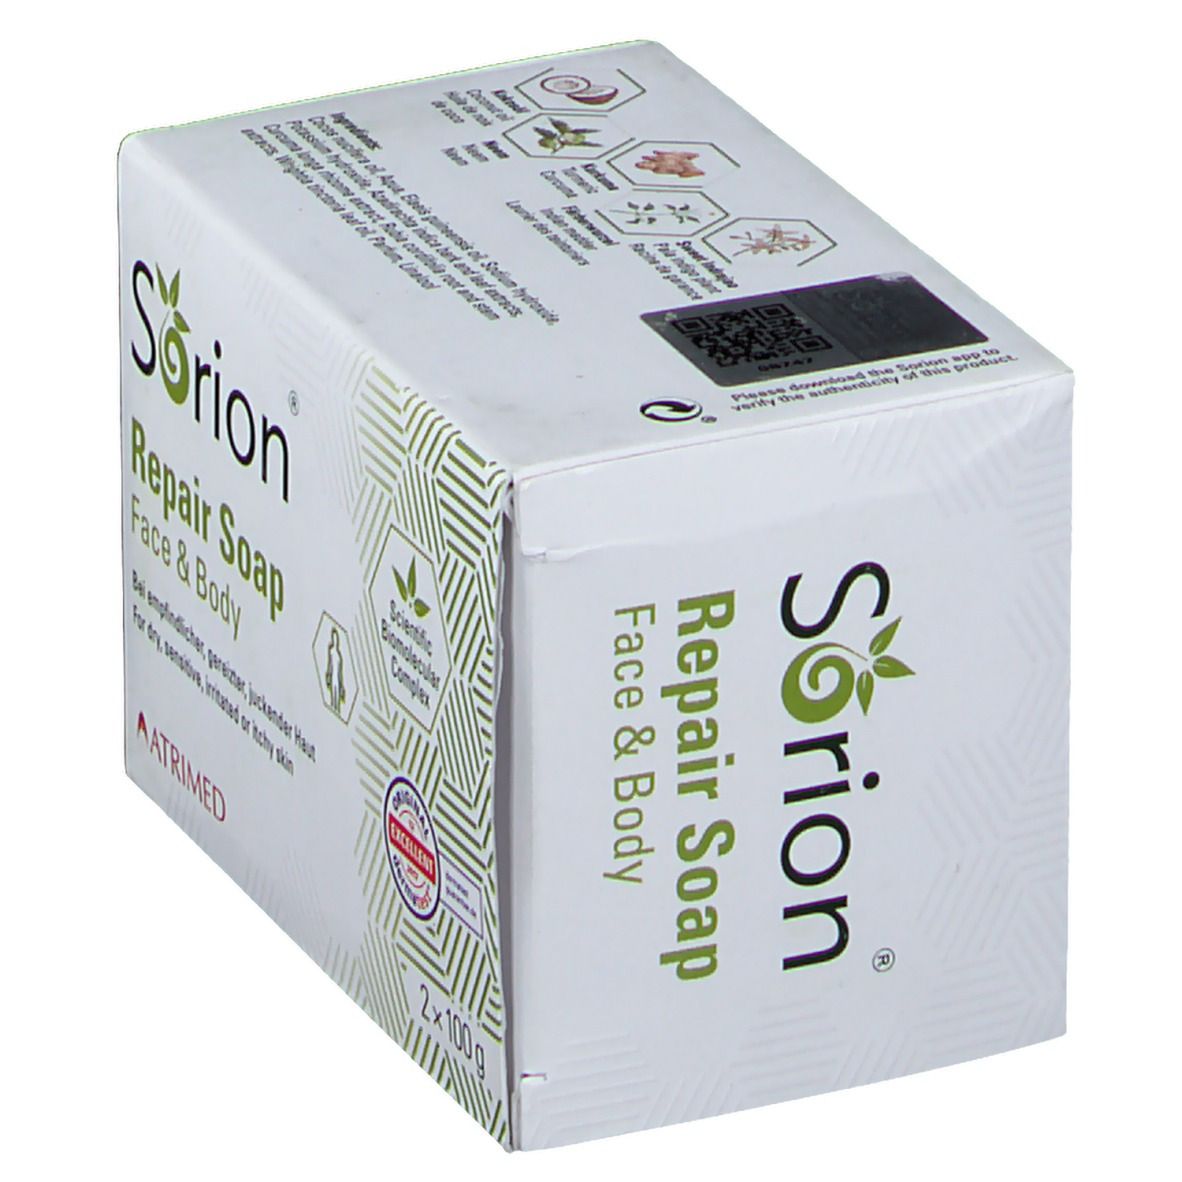 SORION ® Repair Soap